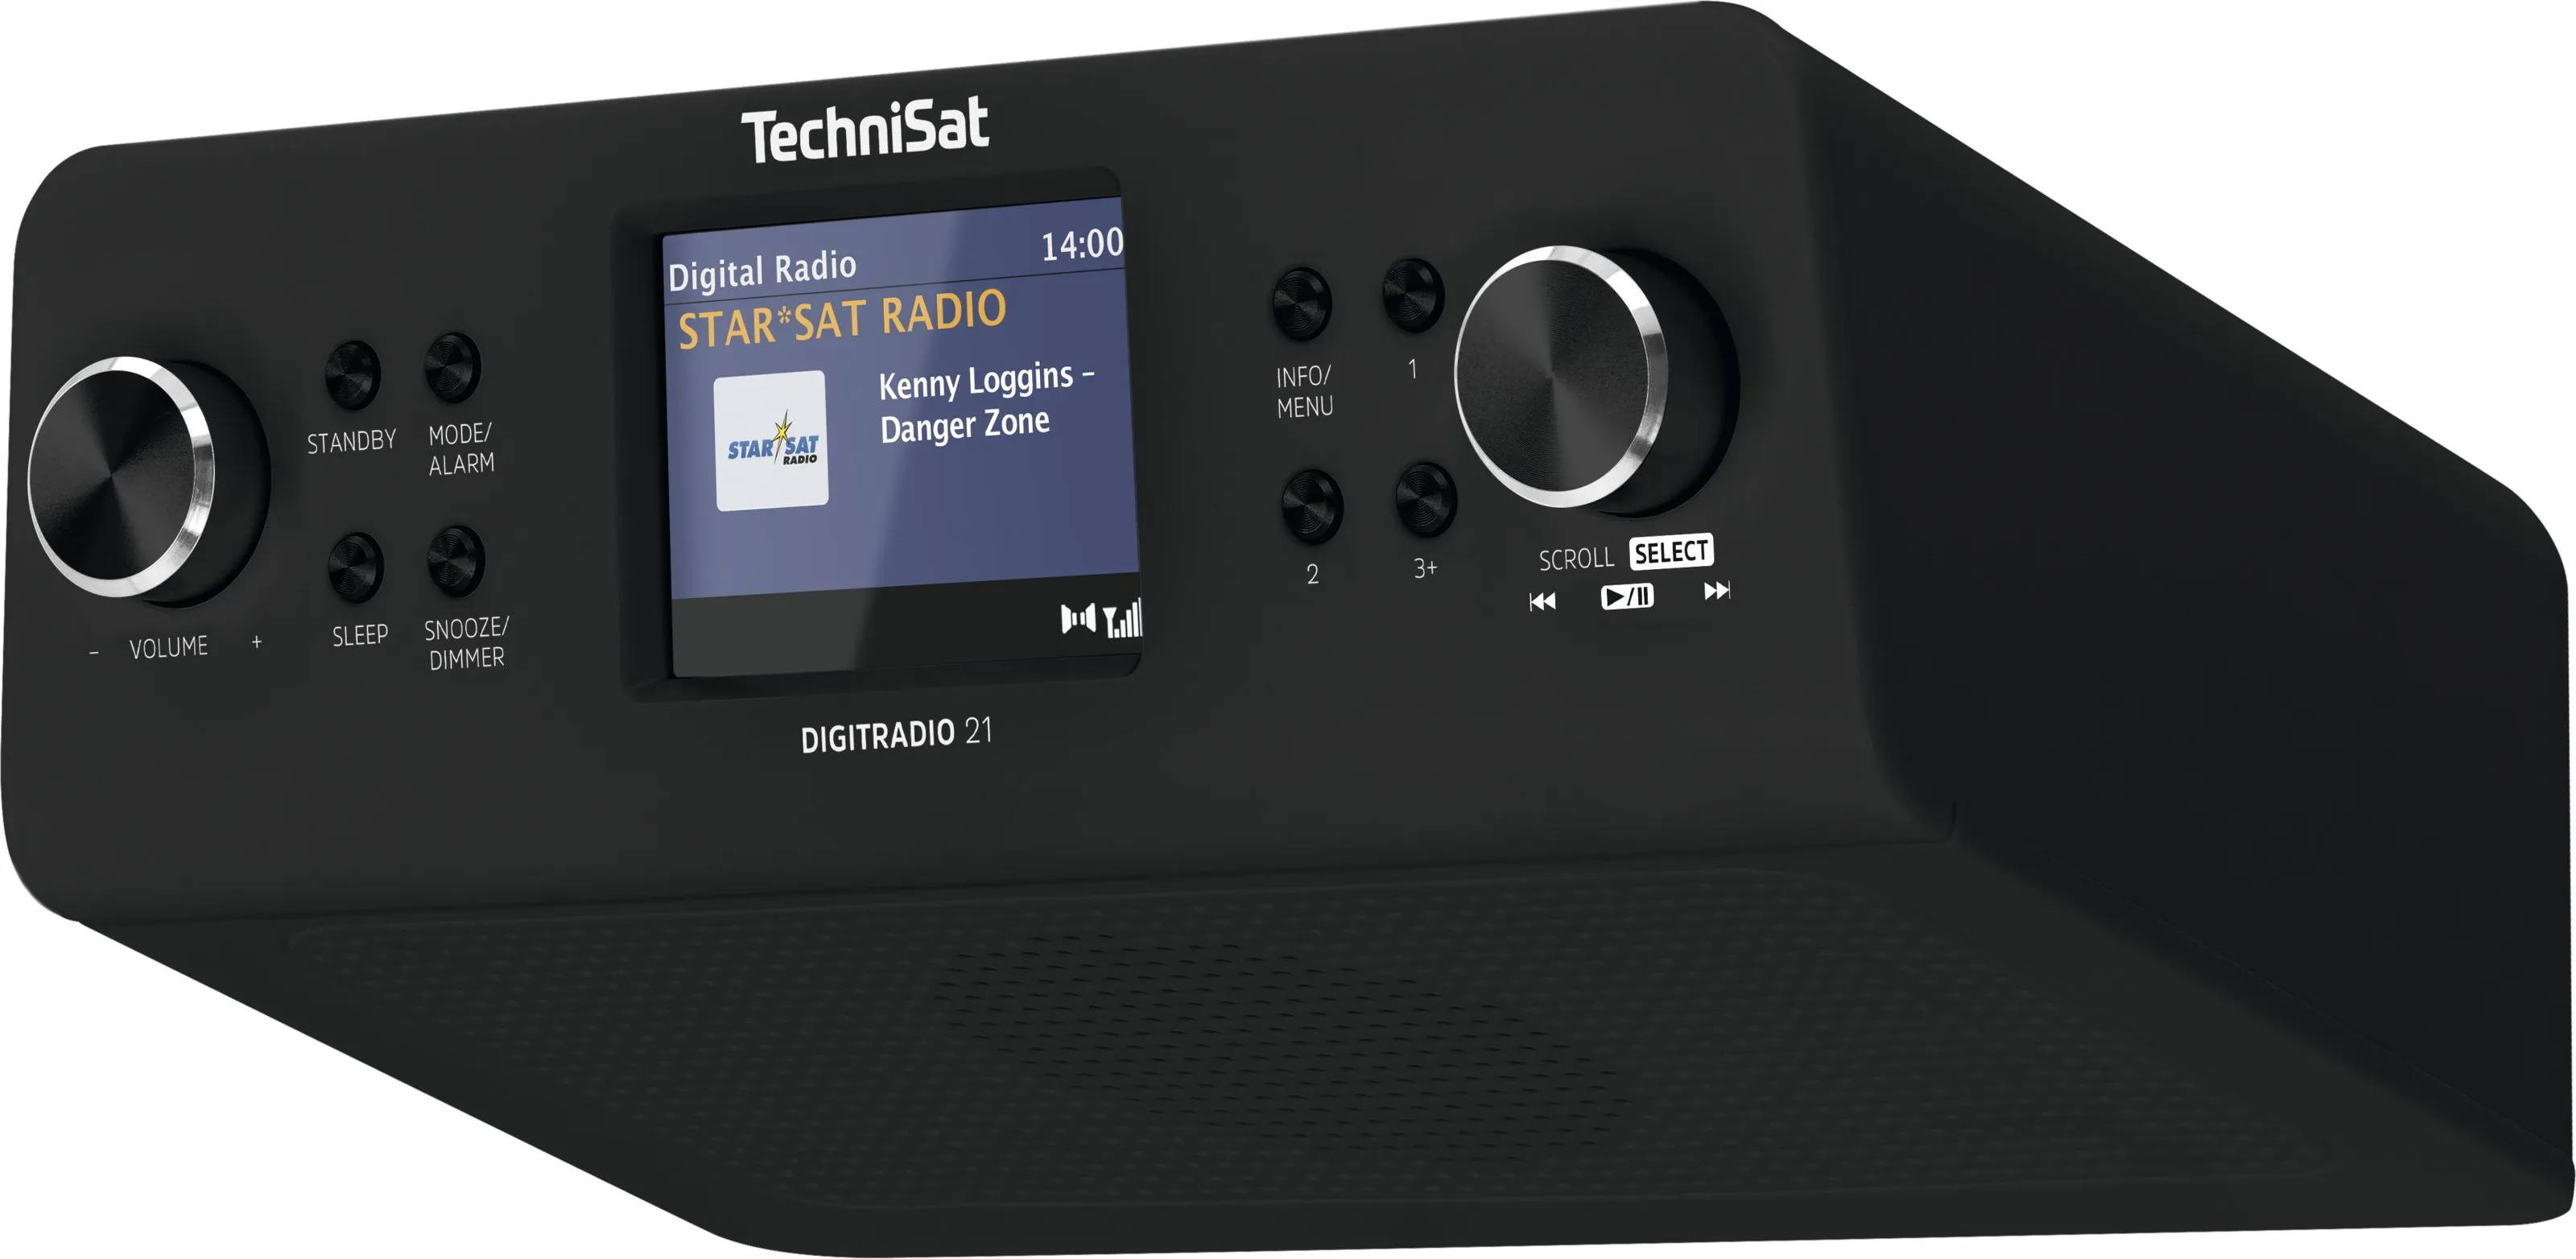 49,00 für 21 € DIGITRADIO | Digital1A TechniSat kaufen